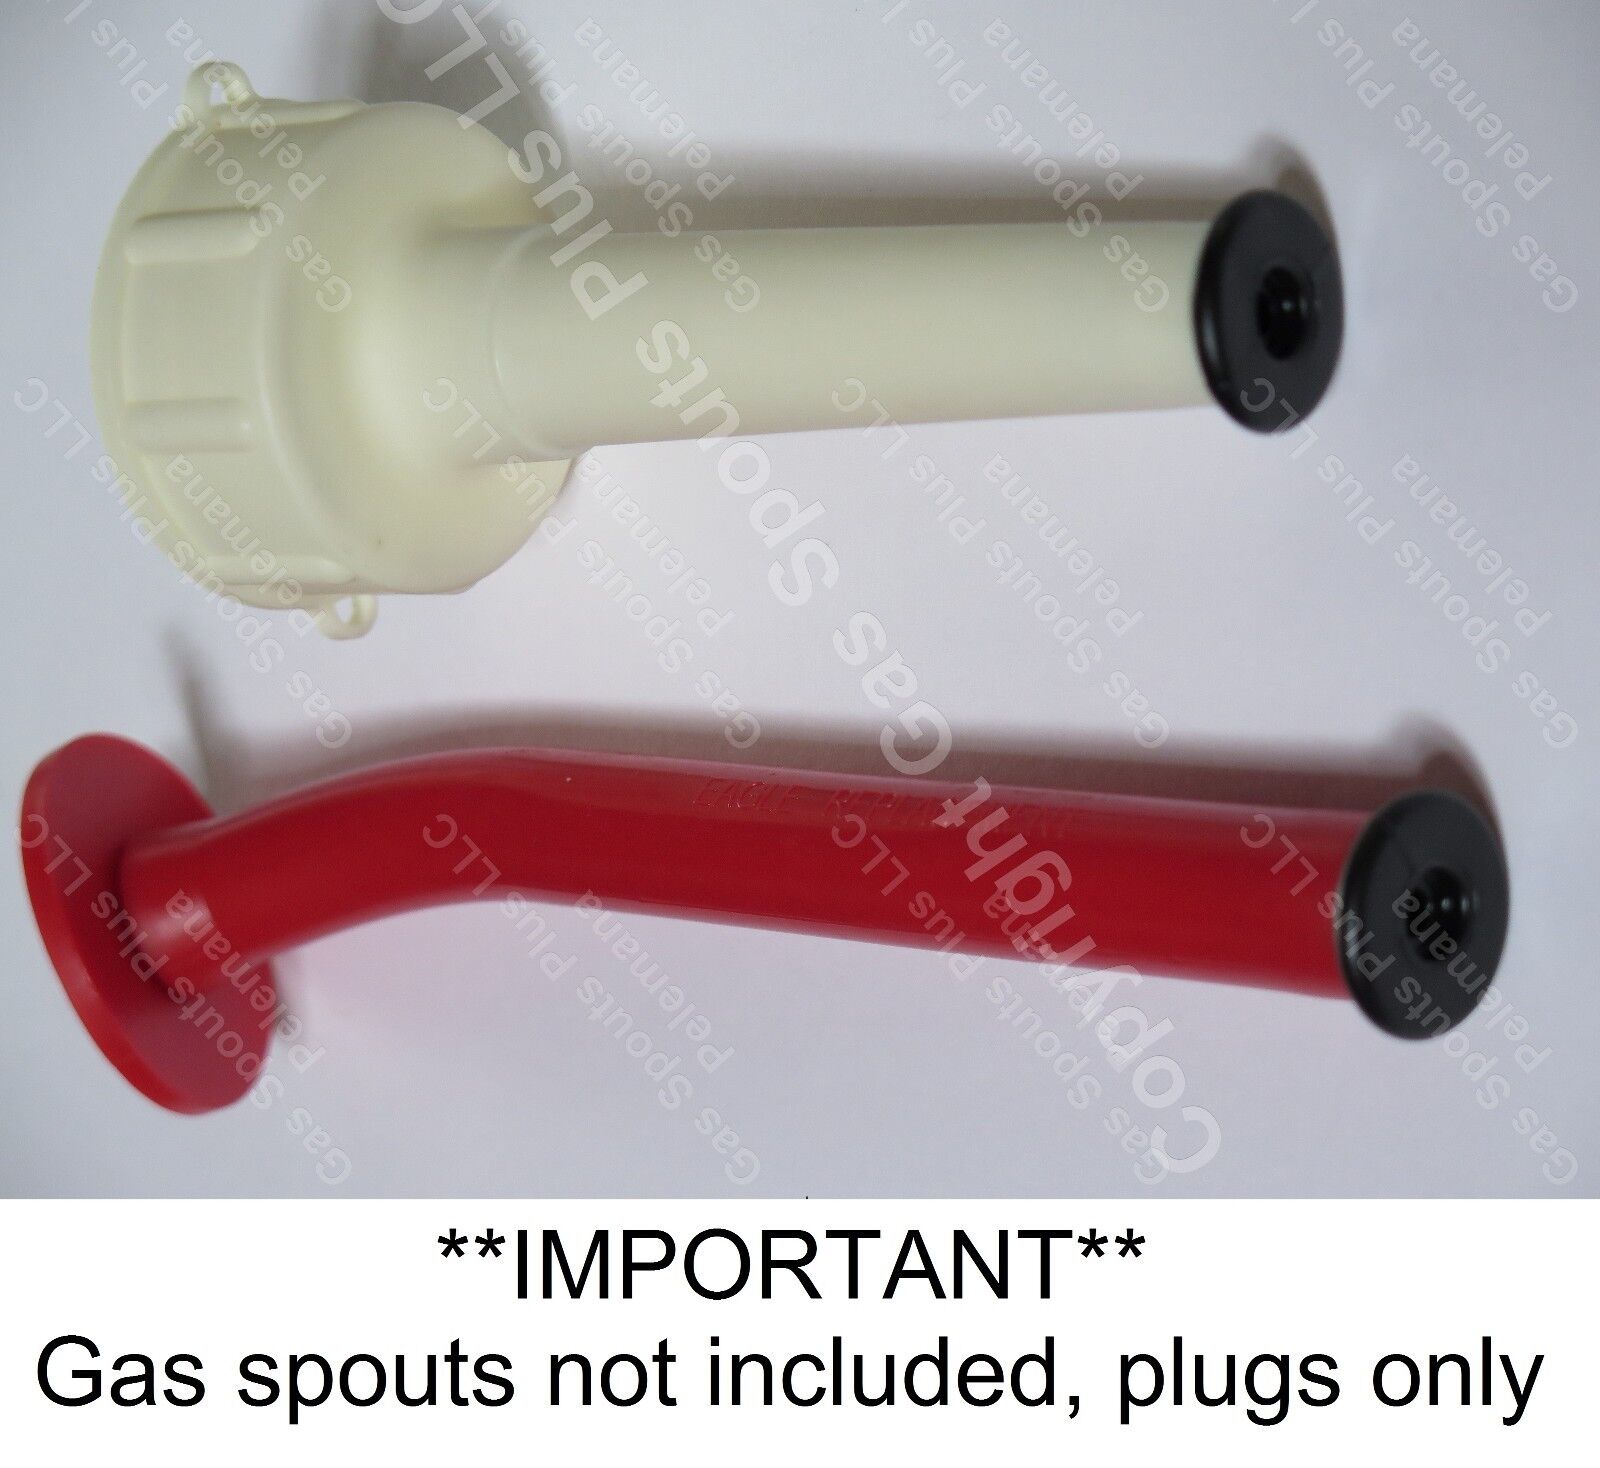 3-Pack Black Eagle Gas Can "SPOUT PLUGS" fits Rigid & Rubber Eagle Gas Spout NEW 3 Black Aftermarket Eagle Spout Plugs GSP-89879 - фотография #6